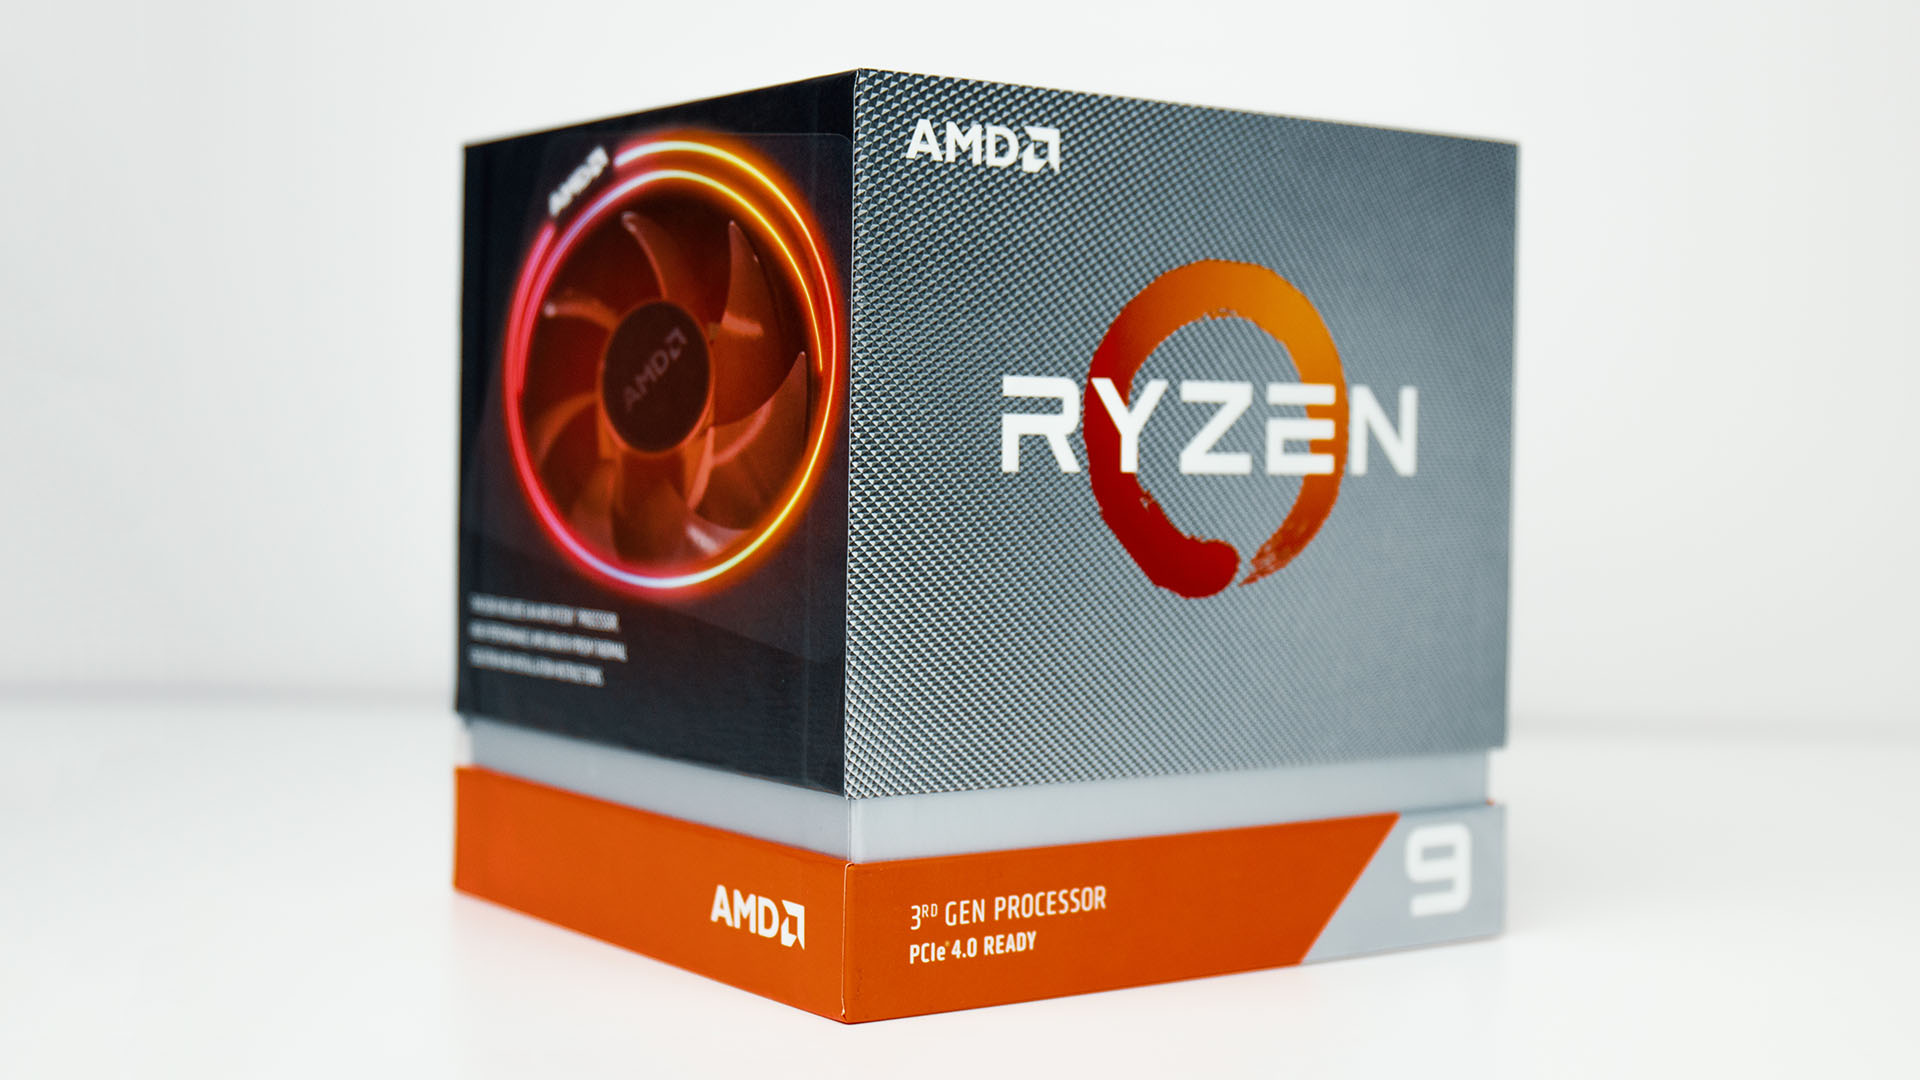 أقل من 6 ٪ من وحدات المعالجة المركزية AMD Ryzen 9 3900X قادرة على الإعلان عن زيادة بقوة 4.6 جيجا هرتز